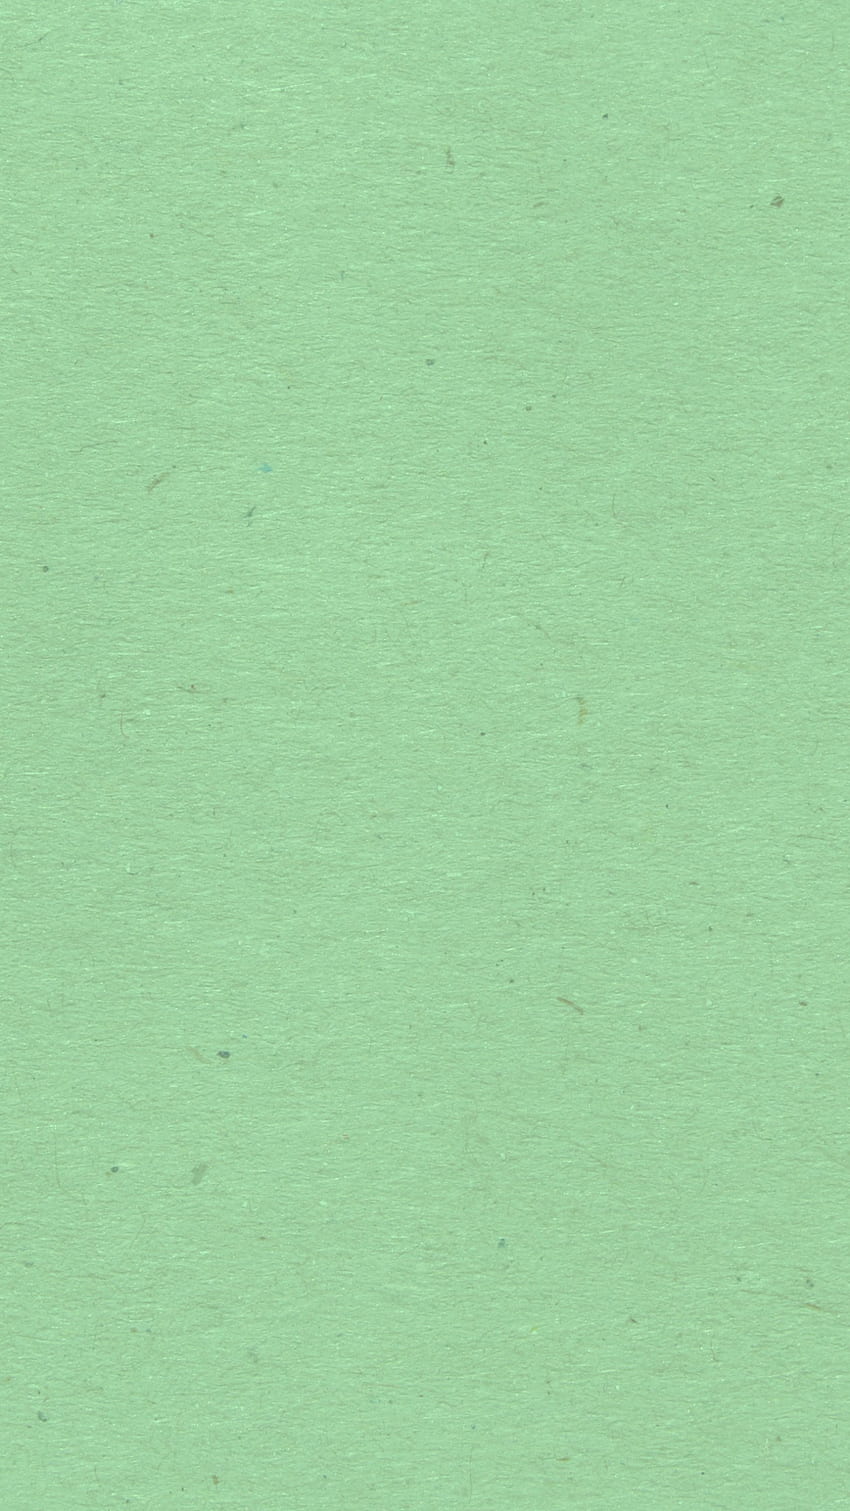 กราฟพื้นผิวกระดาษสีเขียวมิ้นท์ สาธารณะ [] สำหรับมือถือและแท็บเล็ตของคุณ สำรวจพื้นผิวสีเขียวอ่อน เขียวอมฟ้าอ่อน , เขียวสำหรับ วอลล์เปเปอร์โทรศัพท์ HD